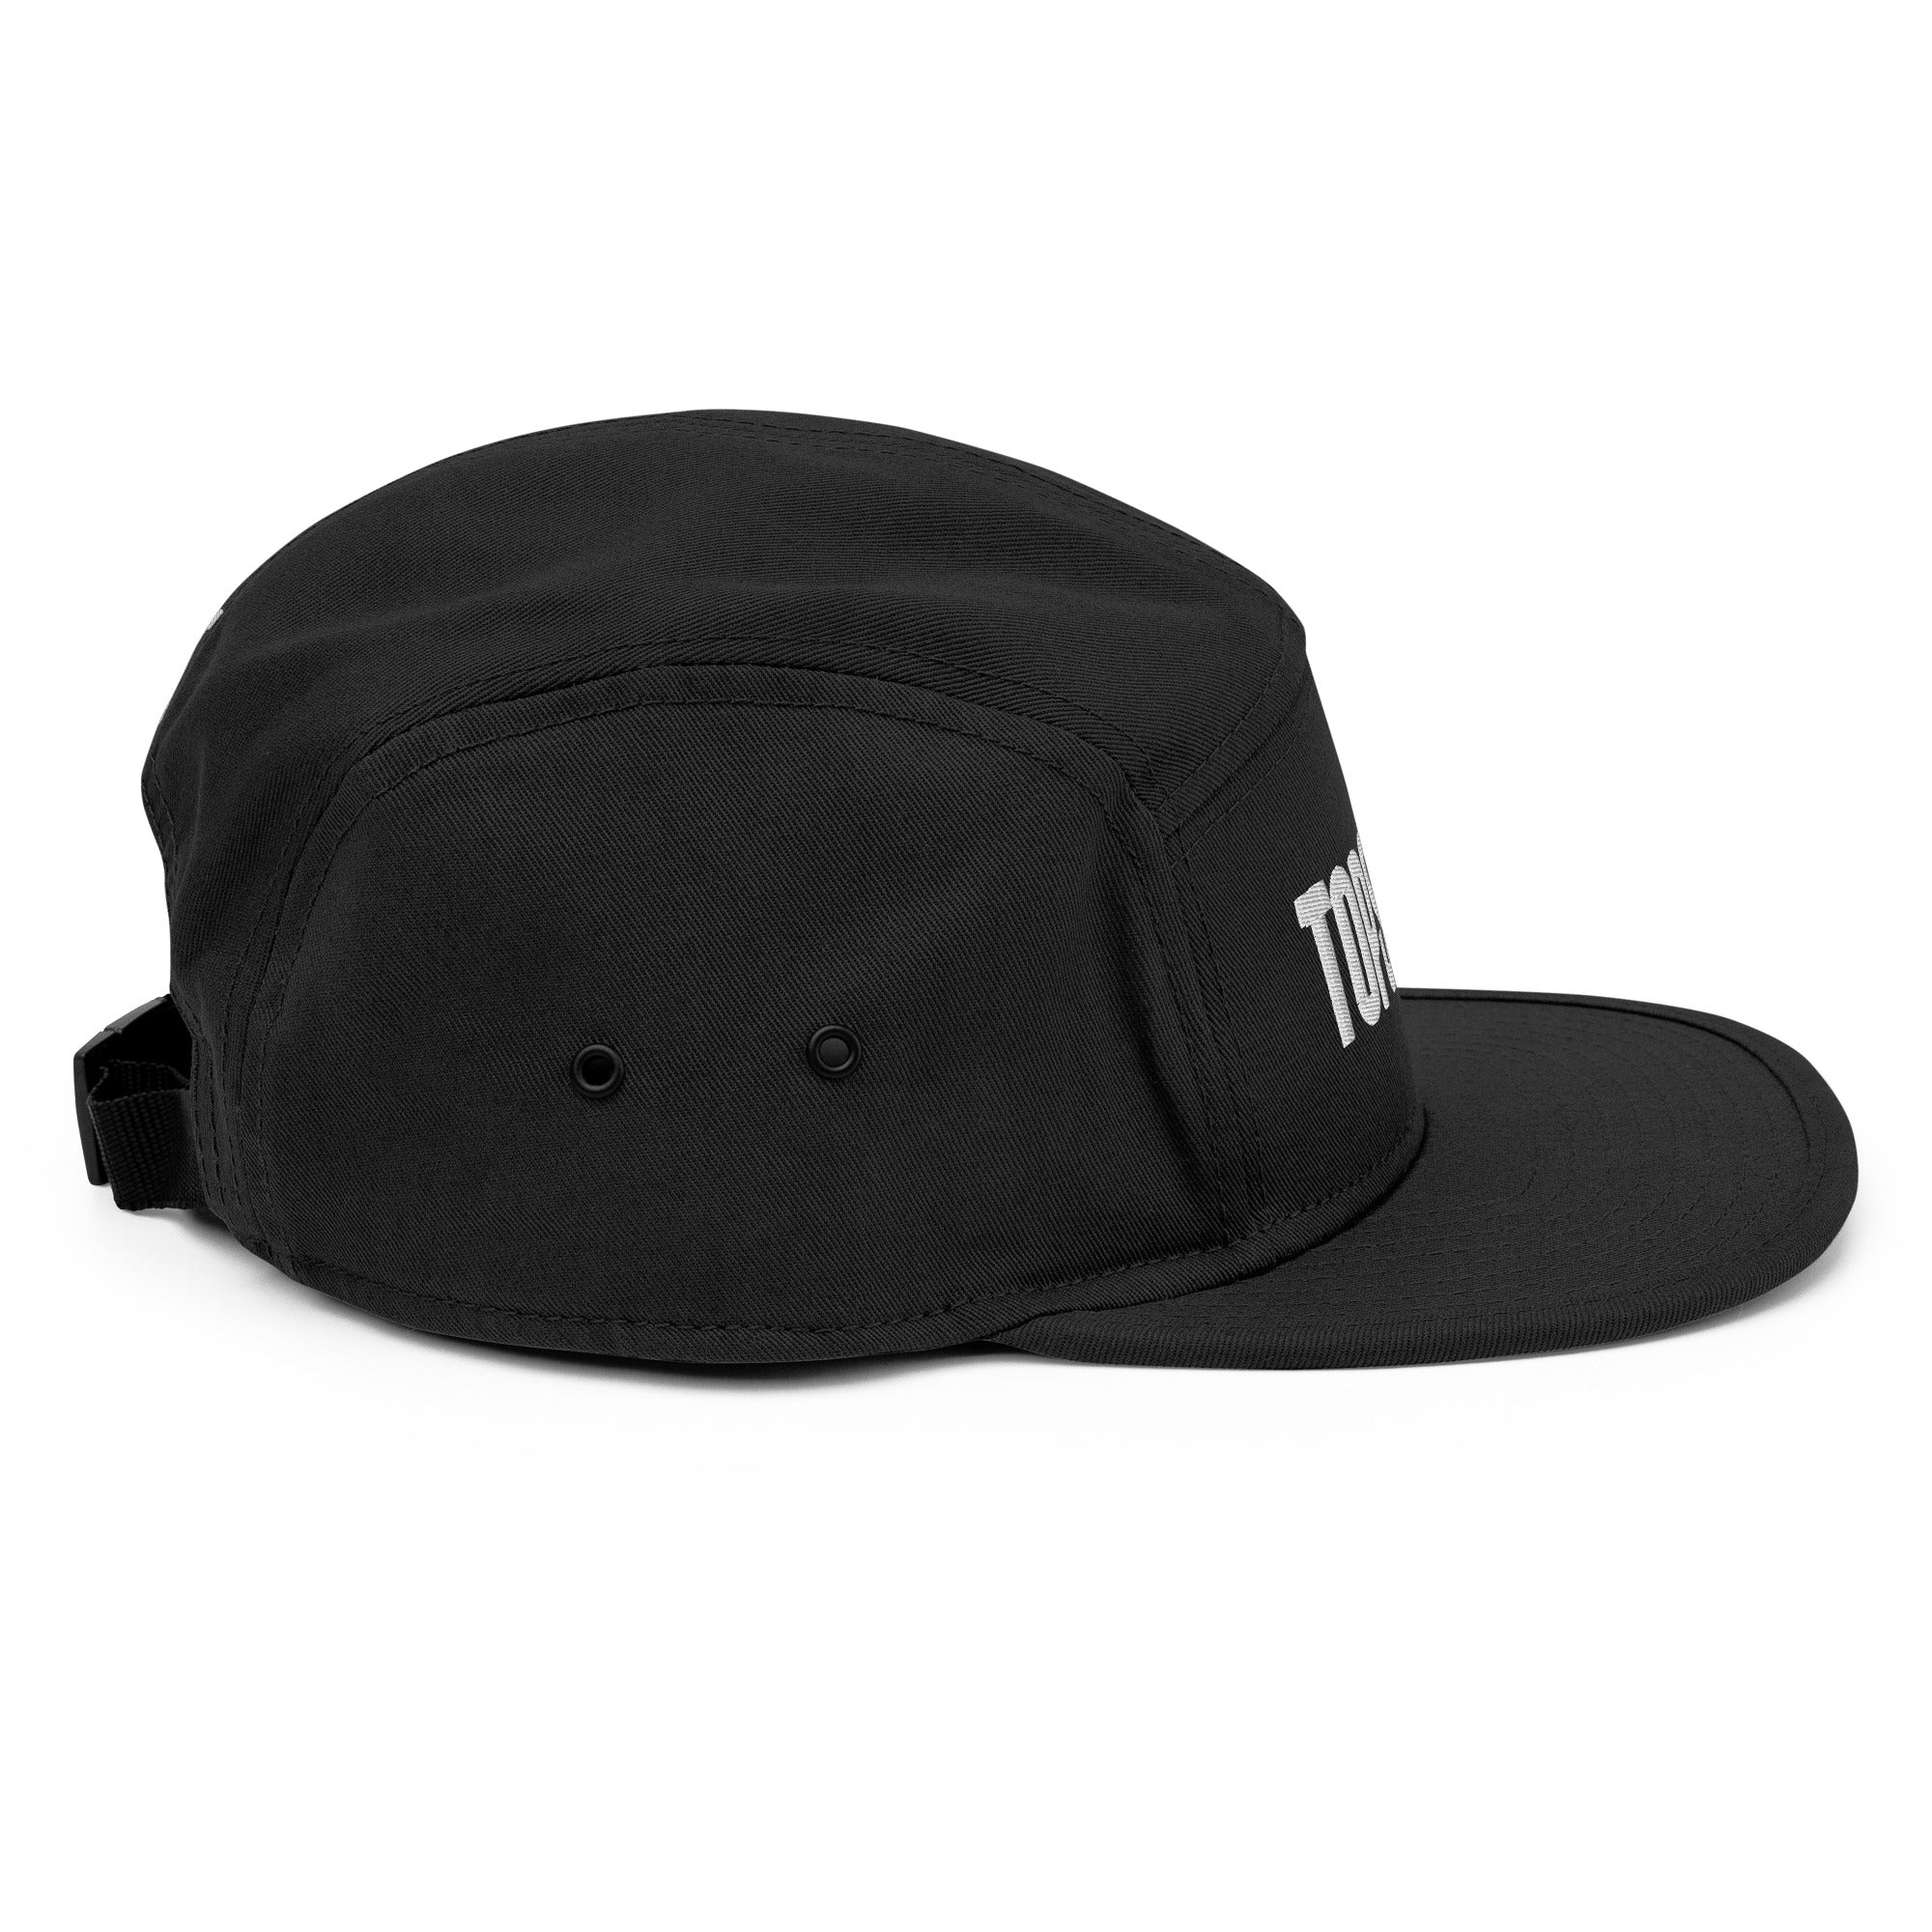 Topstep 5 Panel Camper Hat (Black) – Shop Topstep